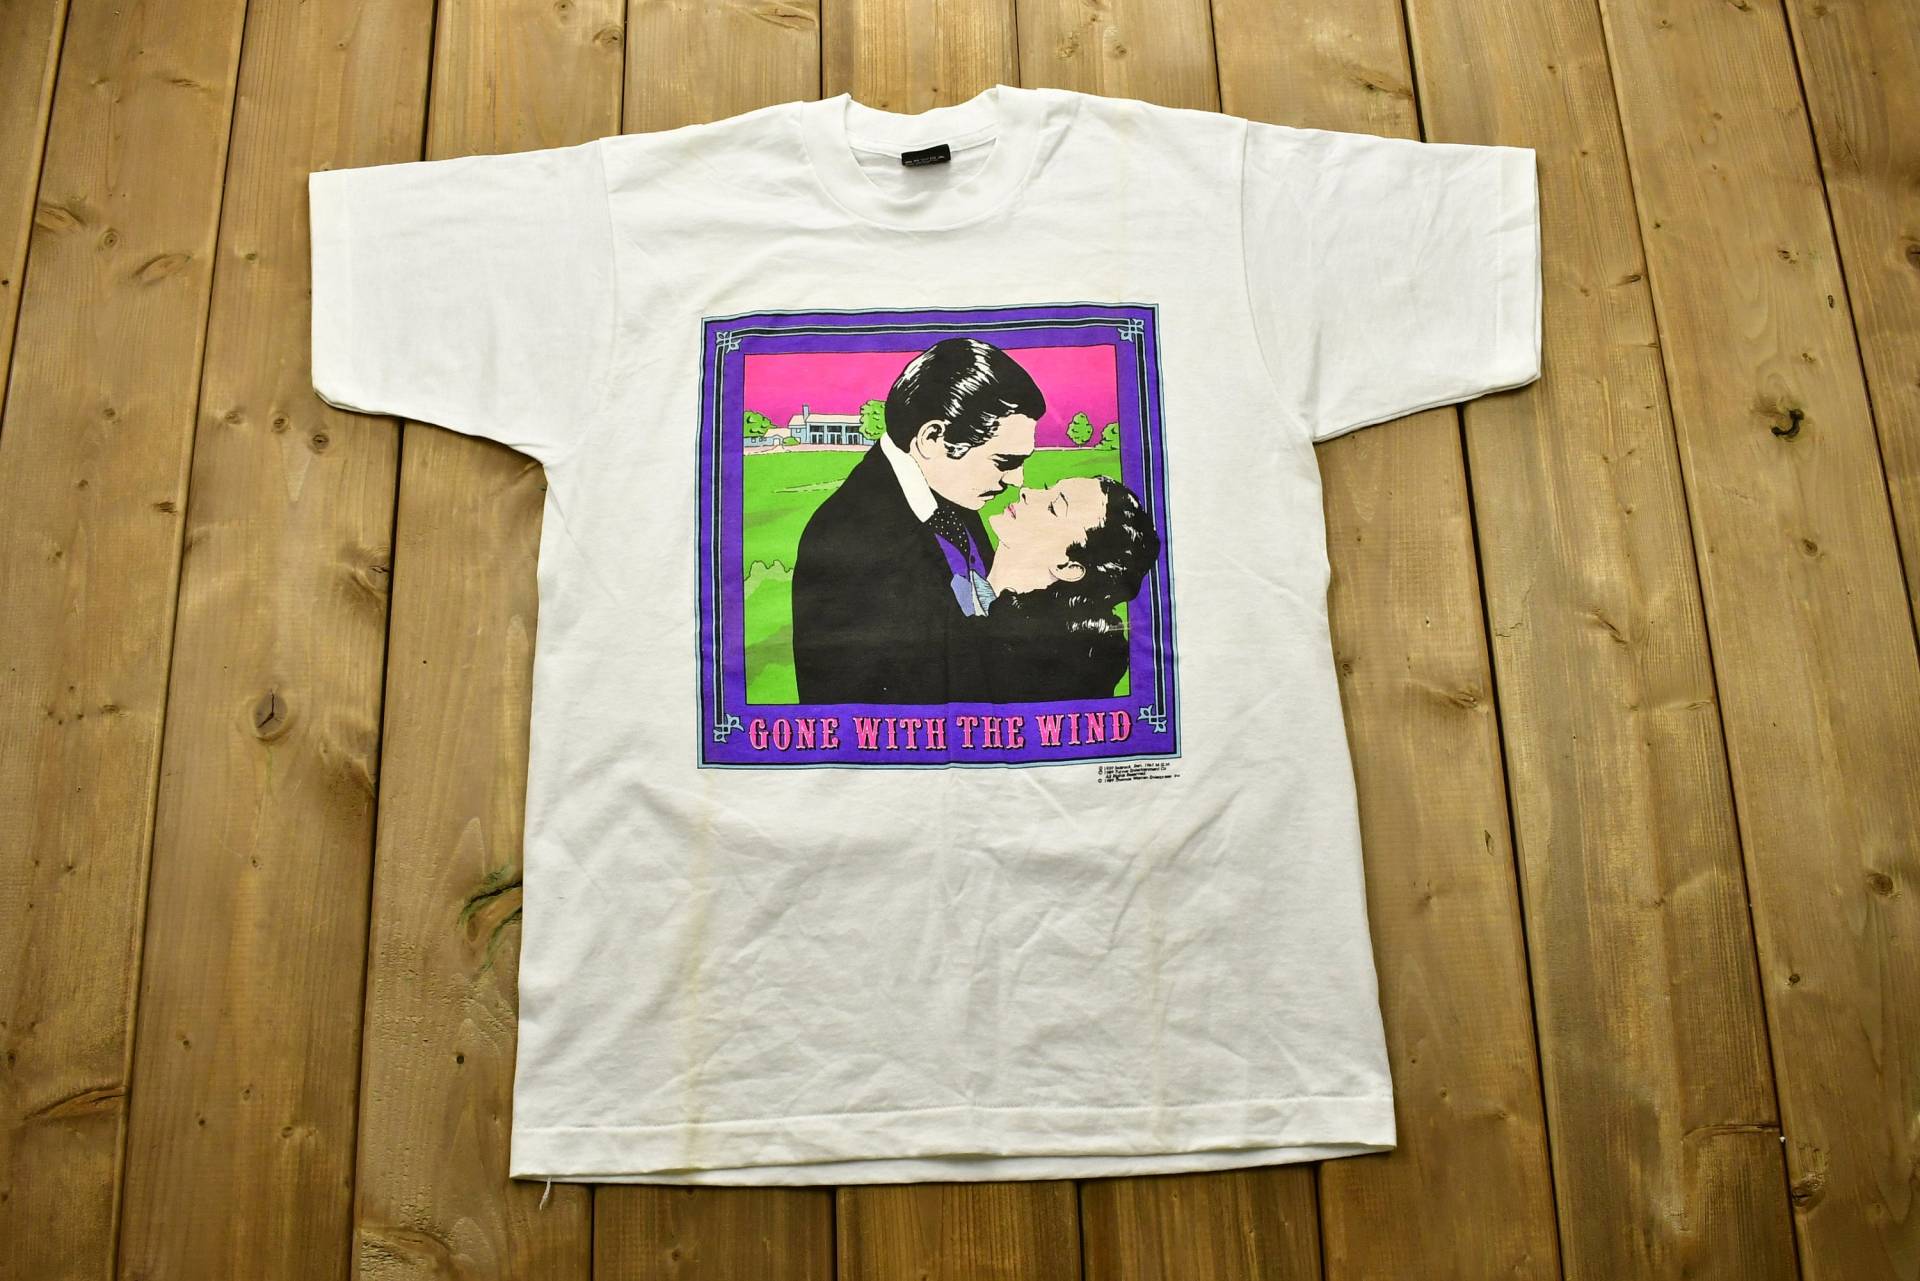 Vintage 1989 Vom Winde Verweht T-Shirt/Film Promo Druck Single Stitch Made in Usa 90S Retro Style 80S Shirt von Lostboysvintage